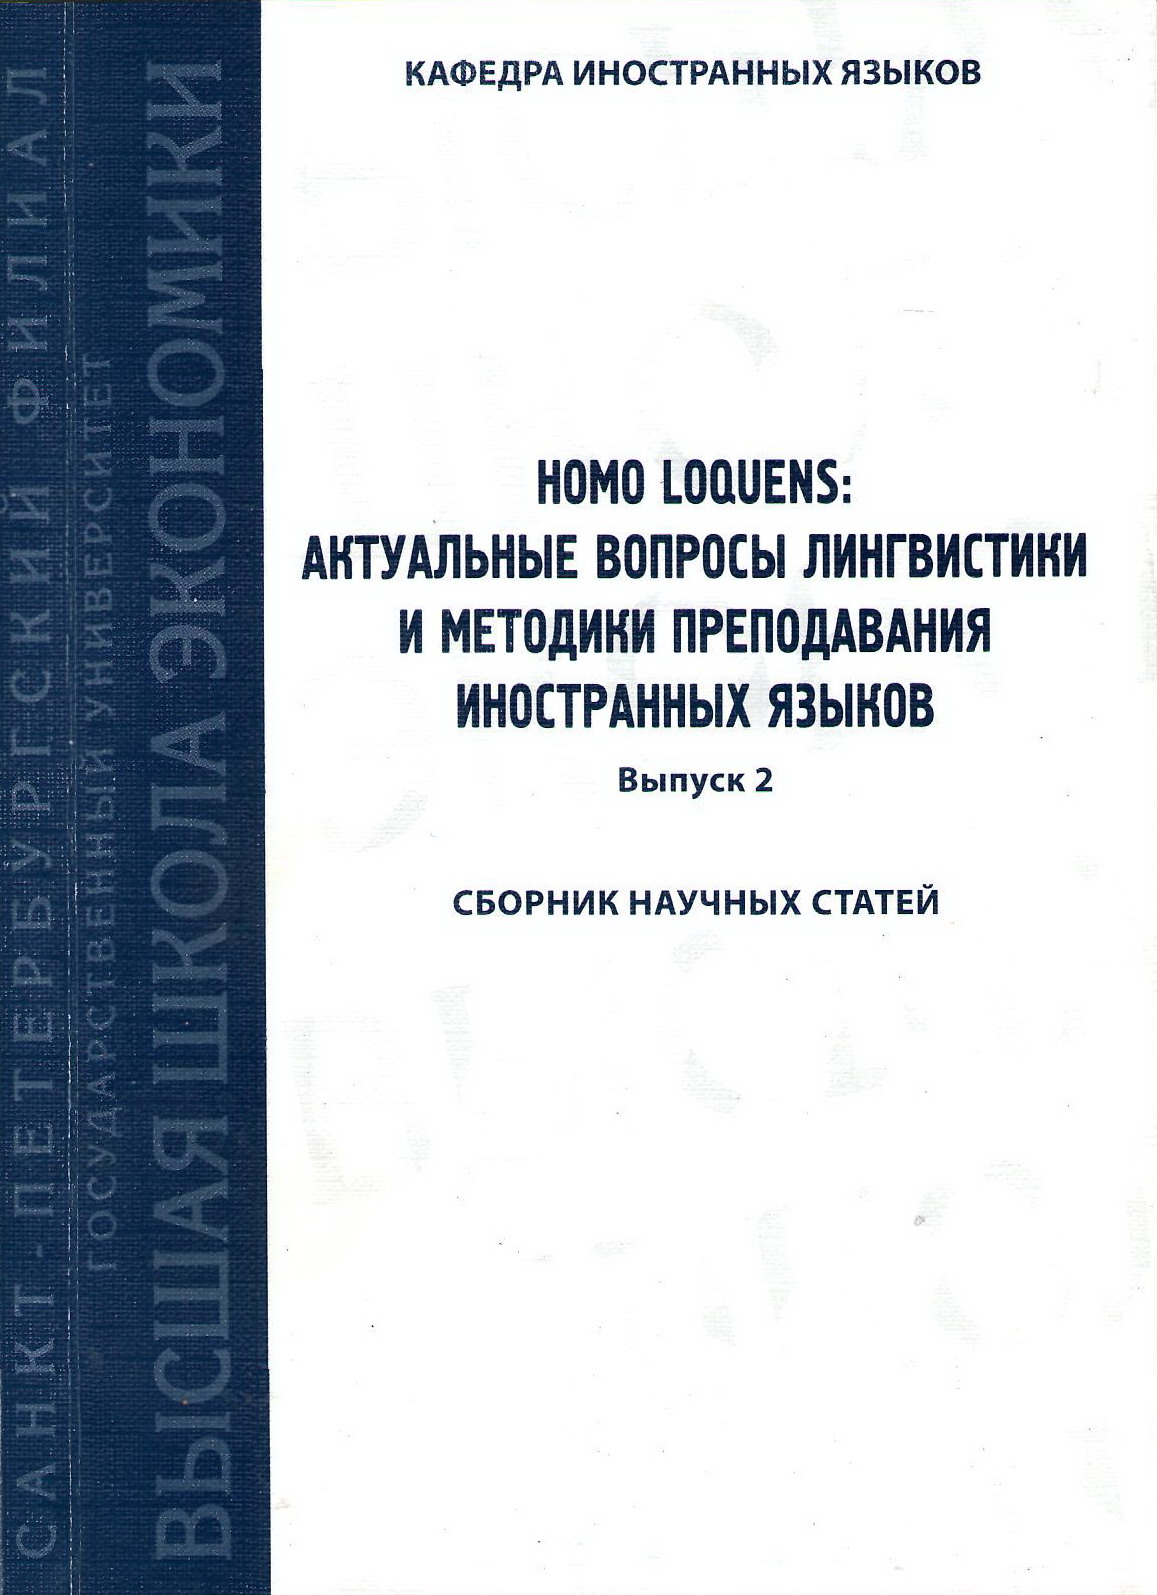 Homo Loquens: актуальные вопросы лингвистики и методики преподавания иностранных языков (2010)